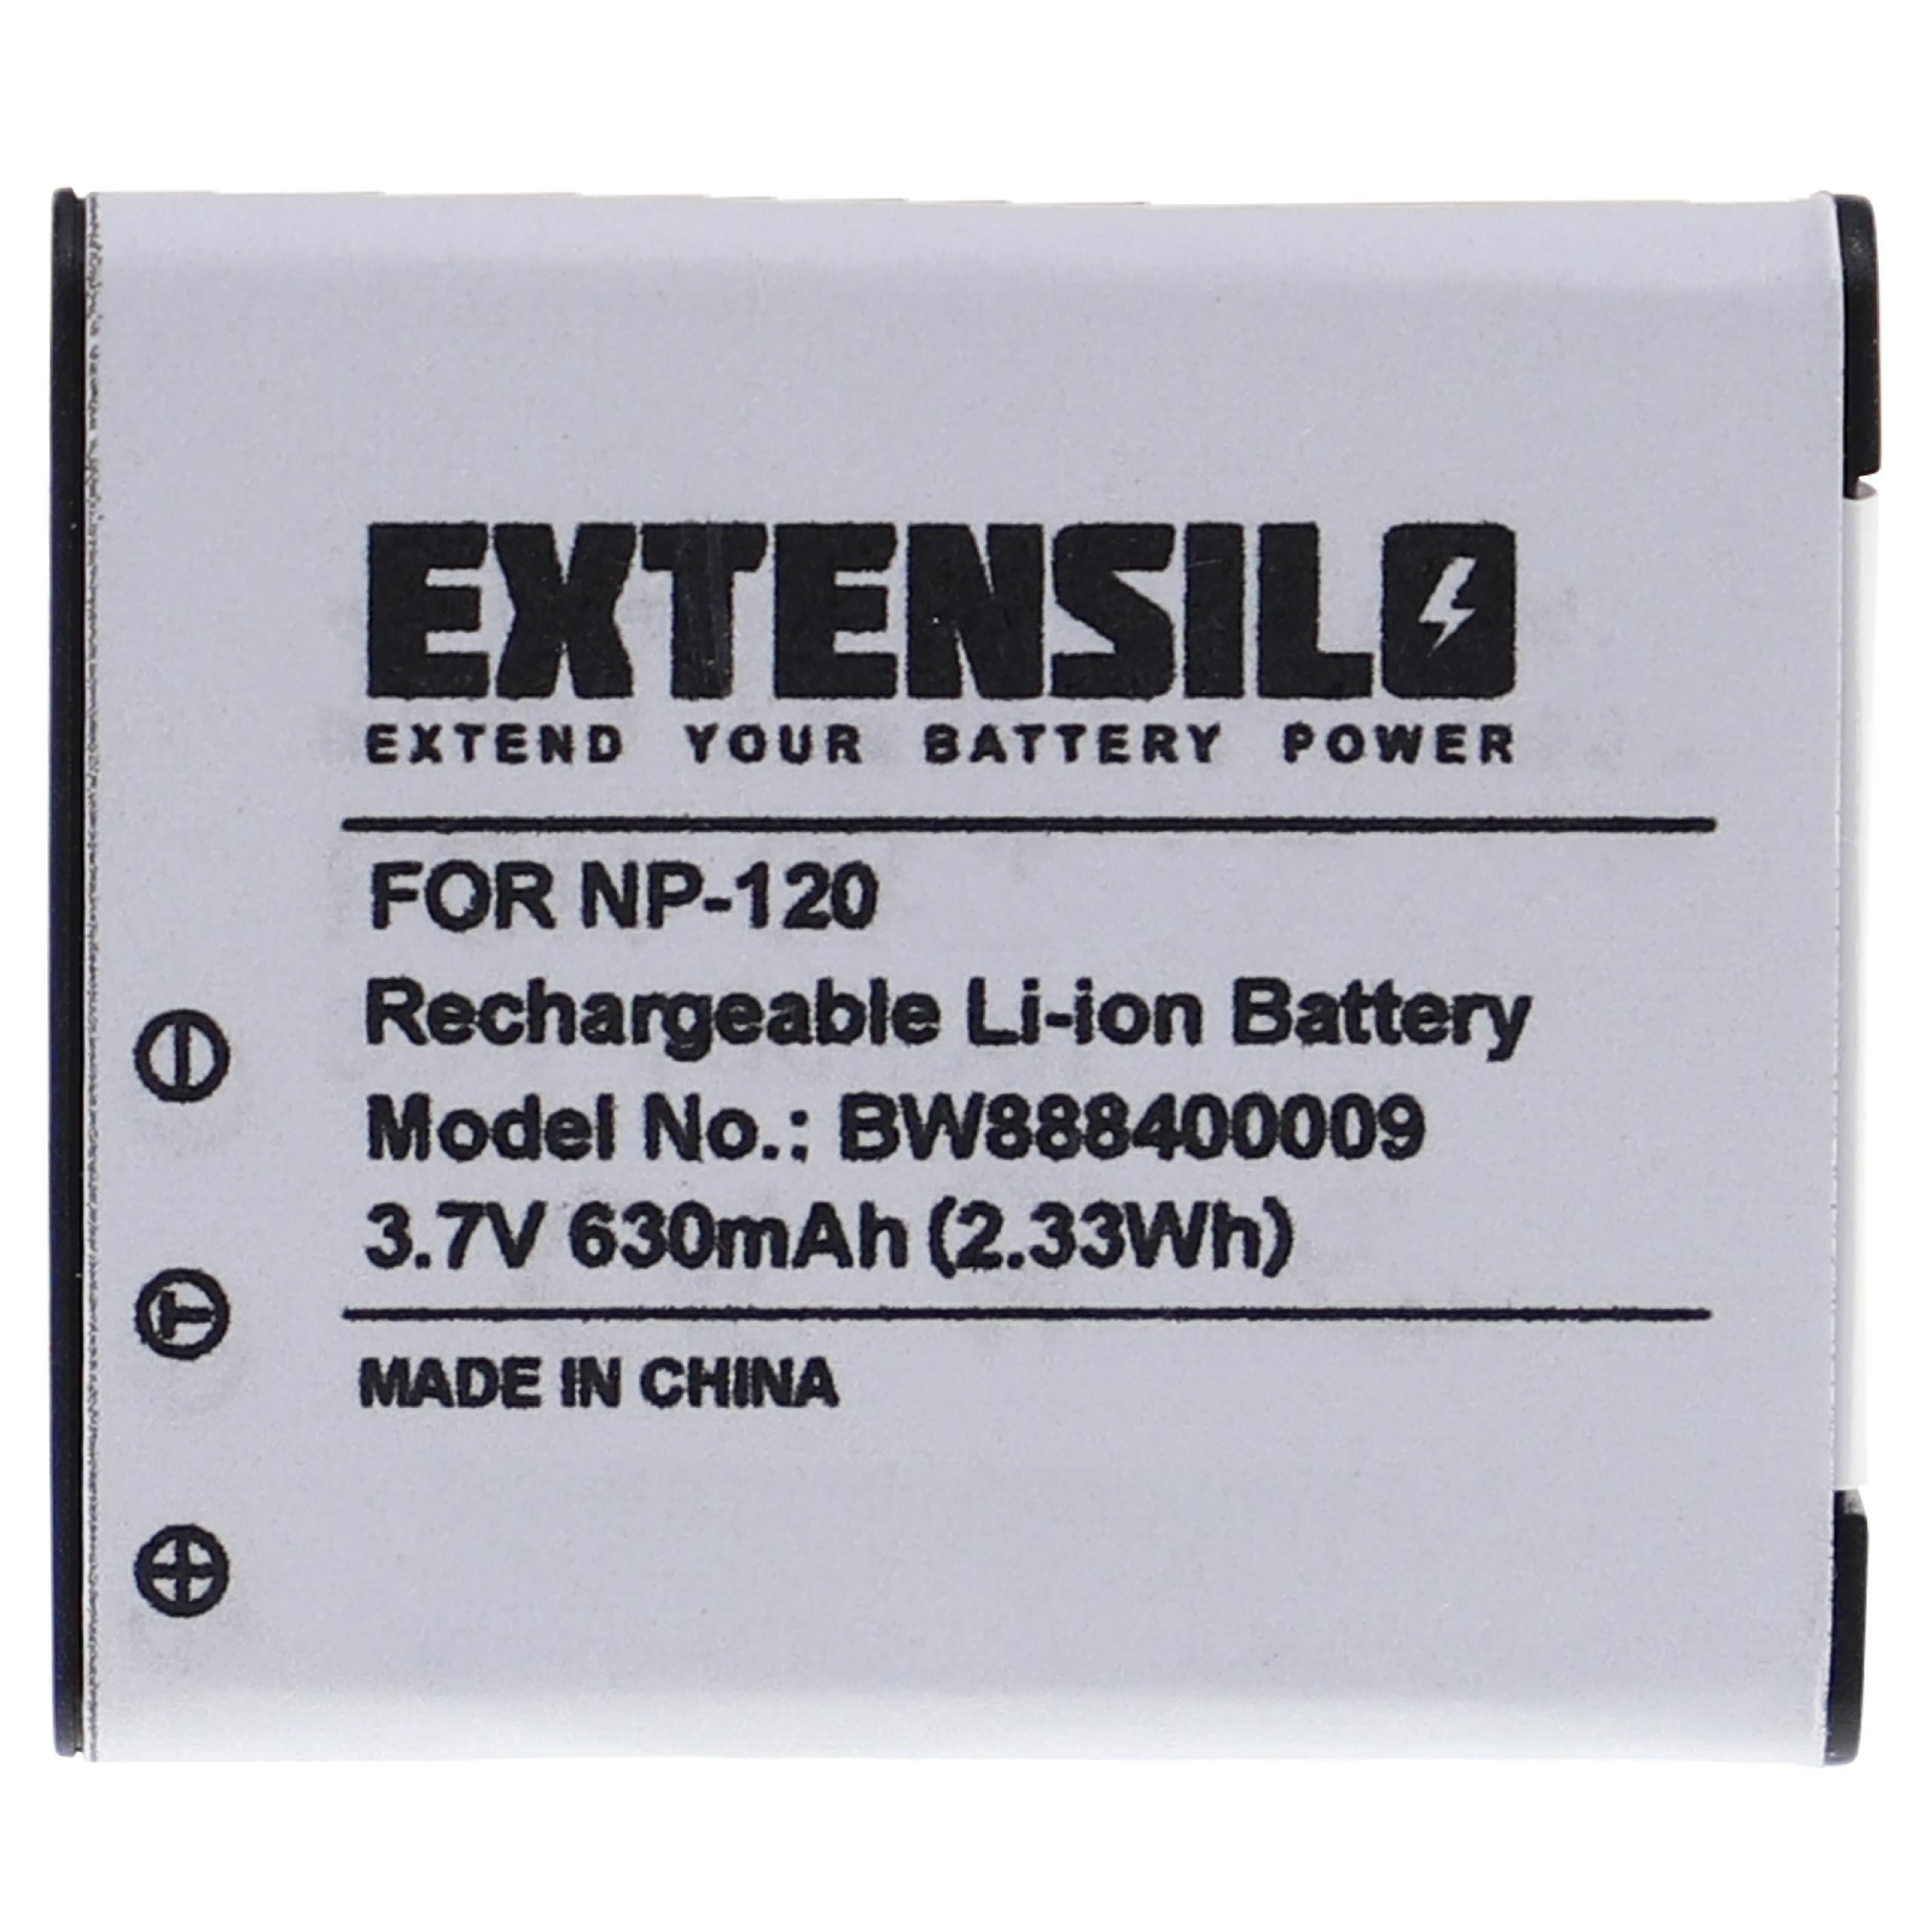 Batterie remplace Casio NP-120DBA, NP-120 pour appareil photo - 630mAh 3,7V Li-ion